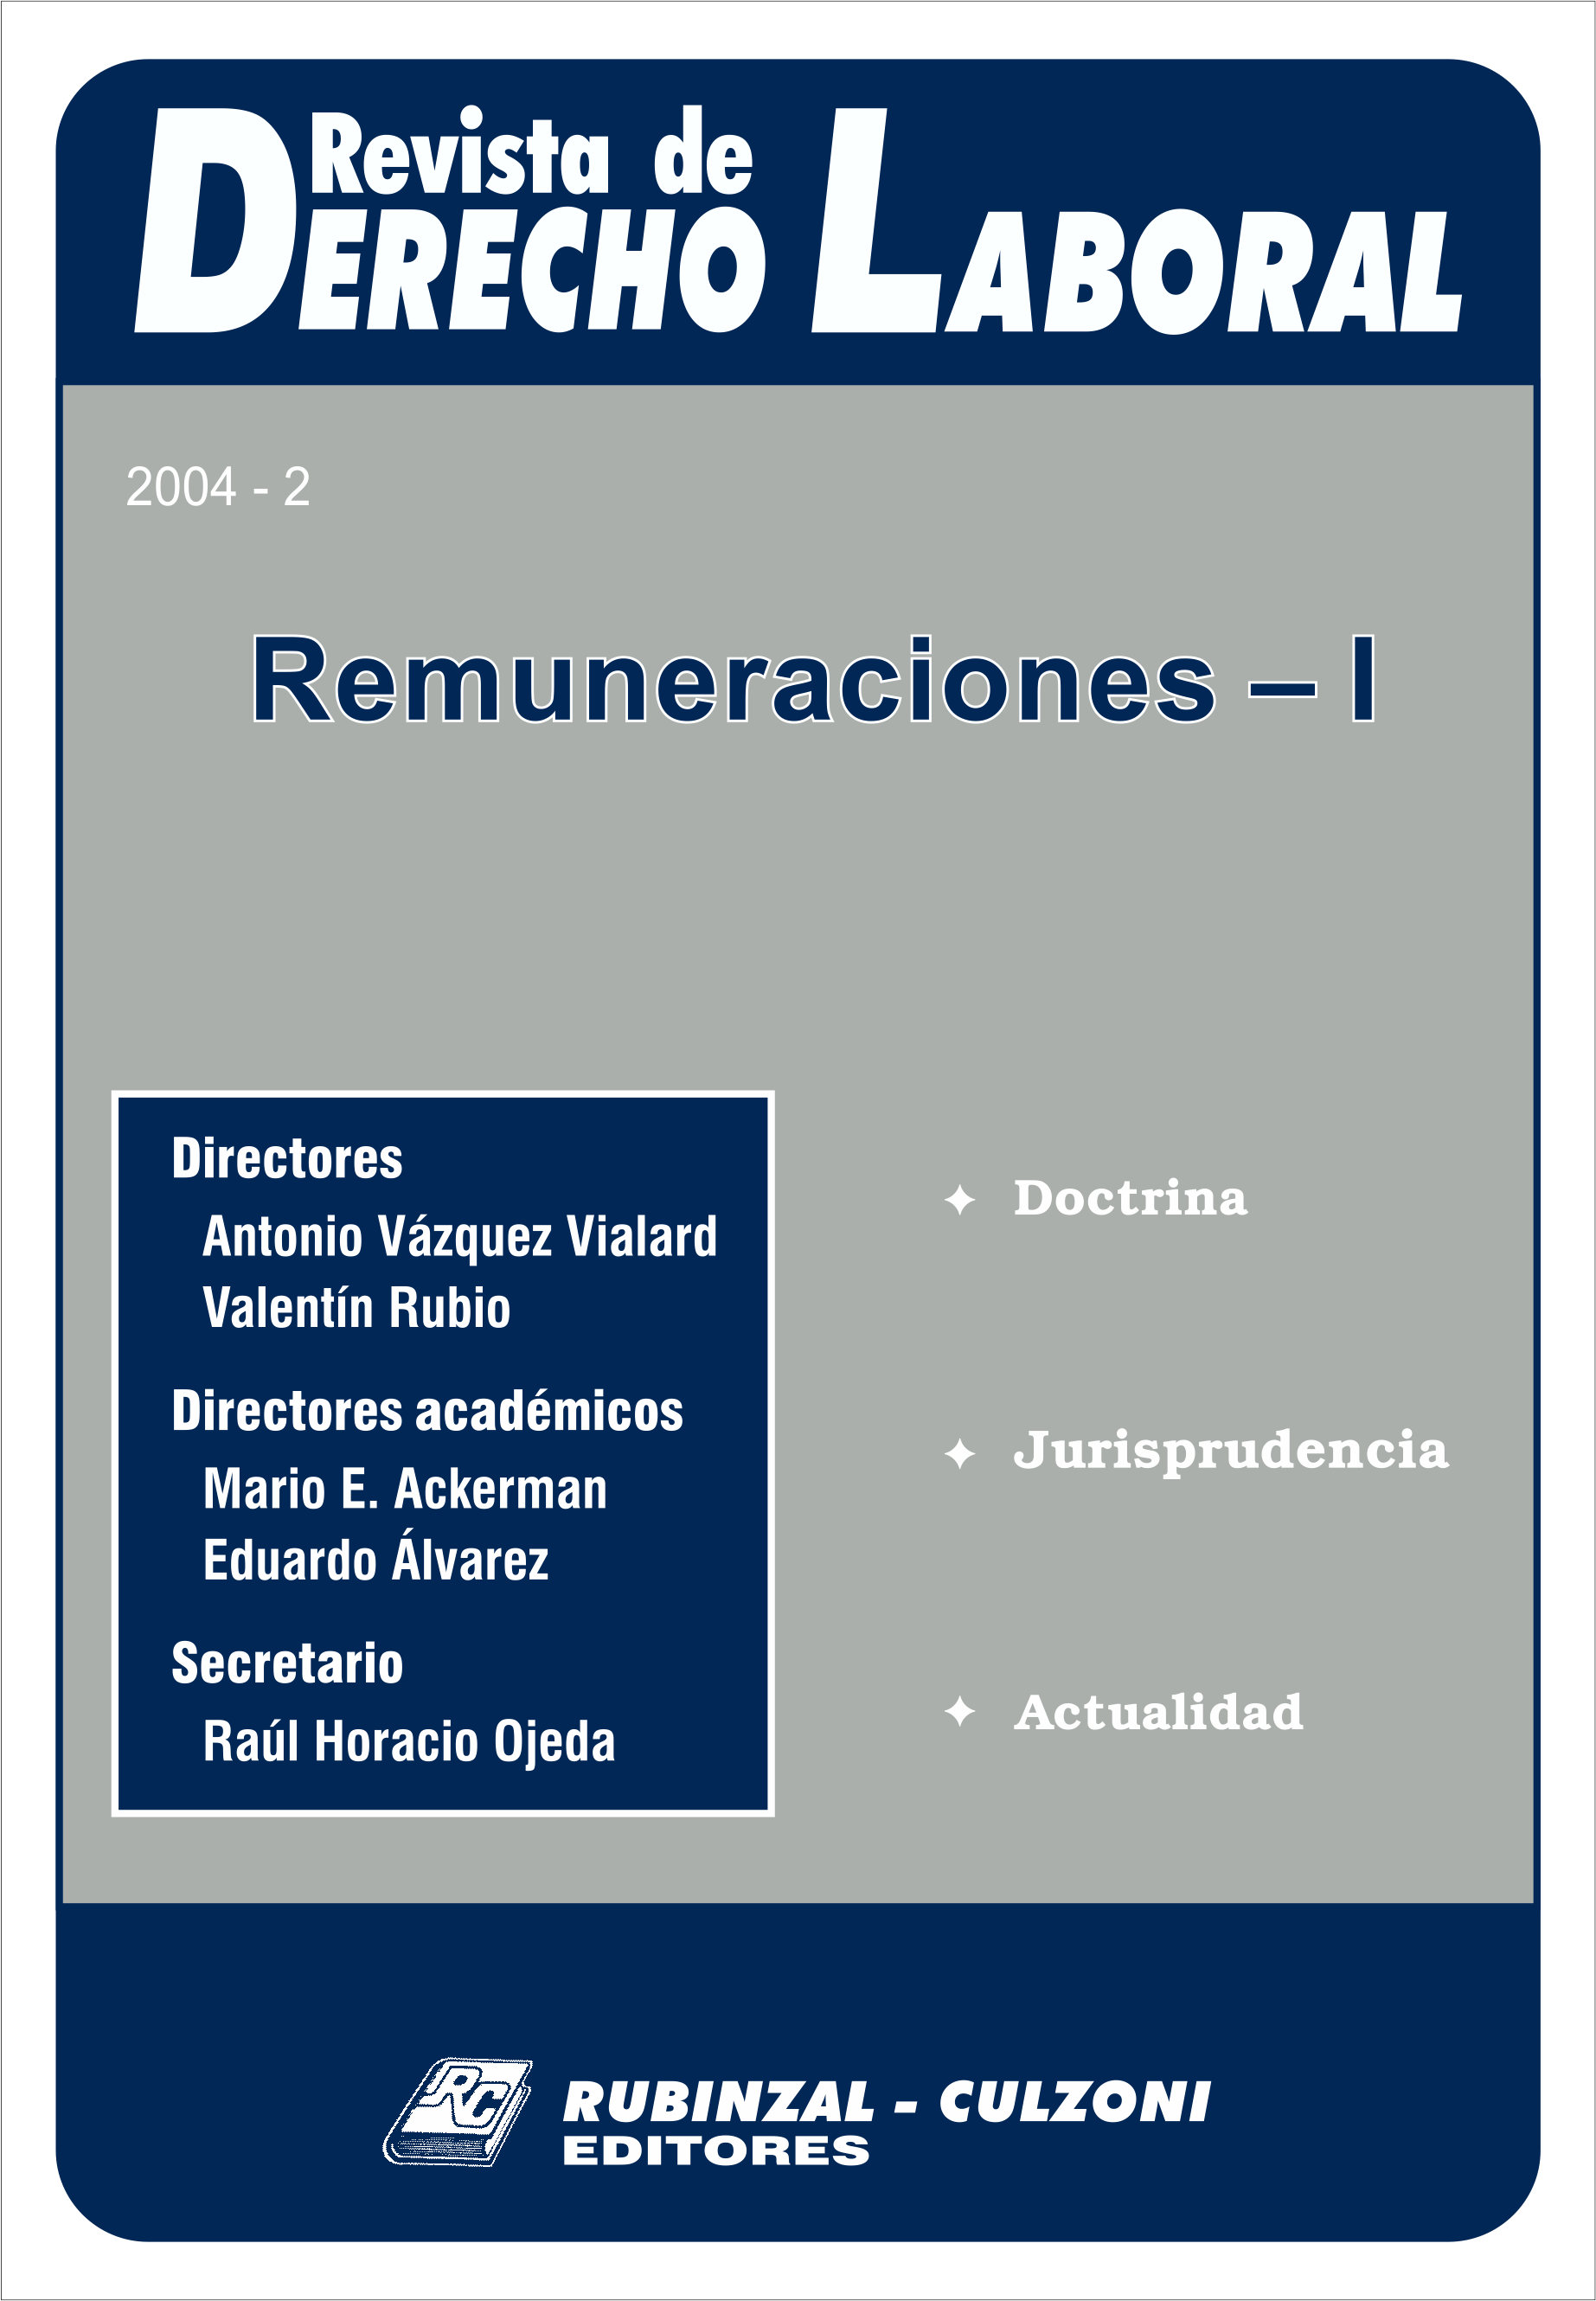 Revista de Derecho Laboral - Remuneraciones I.